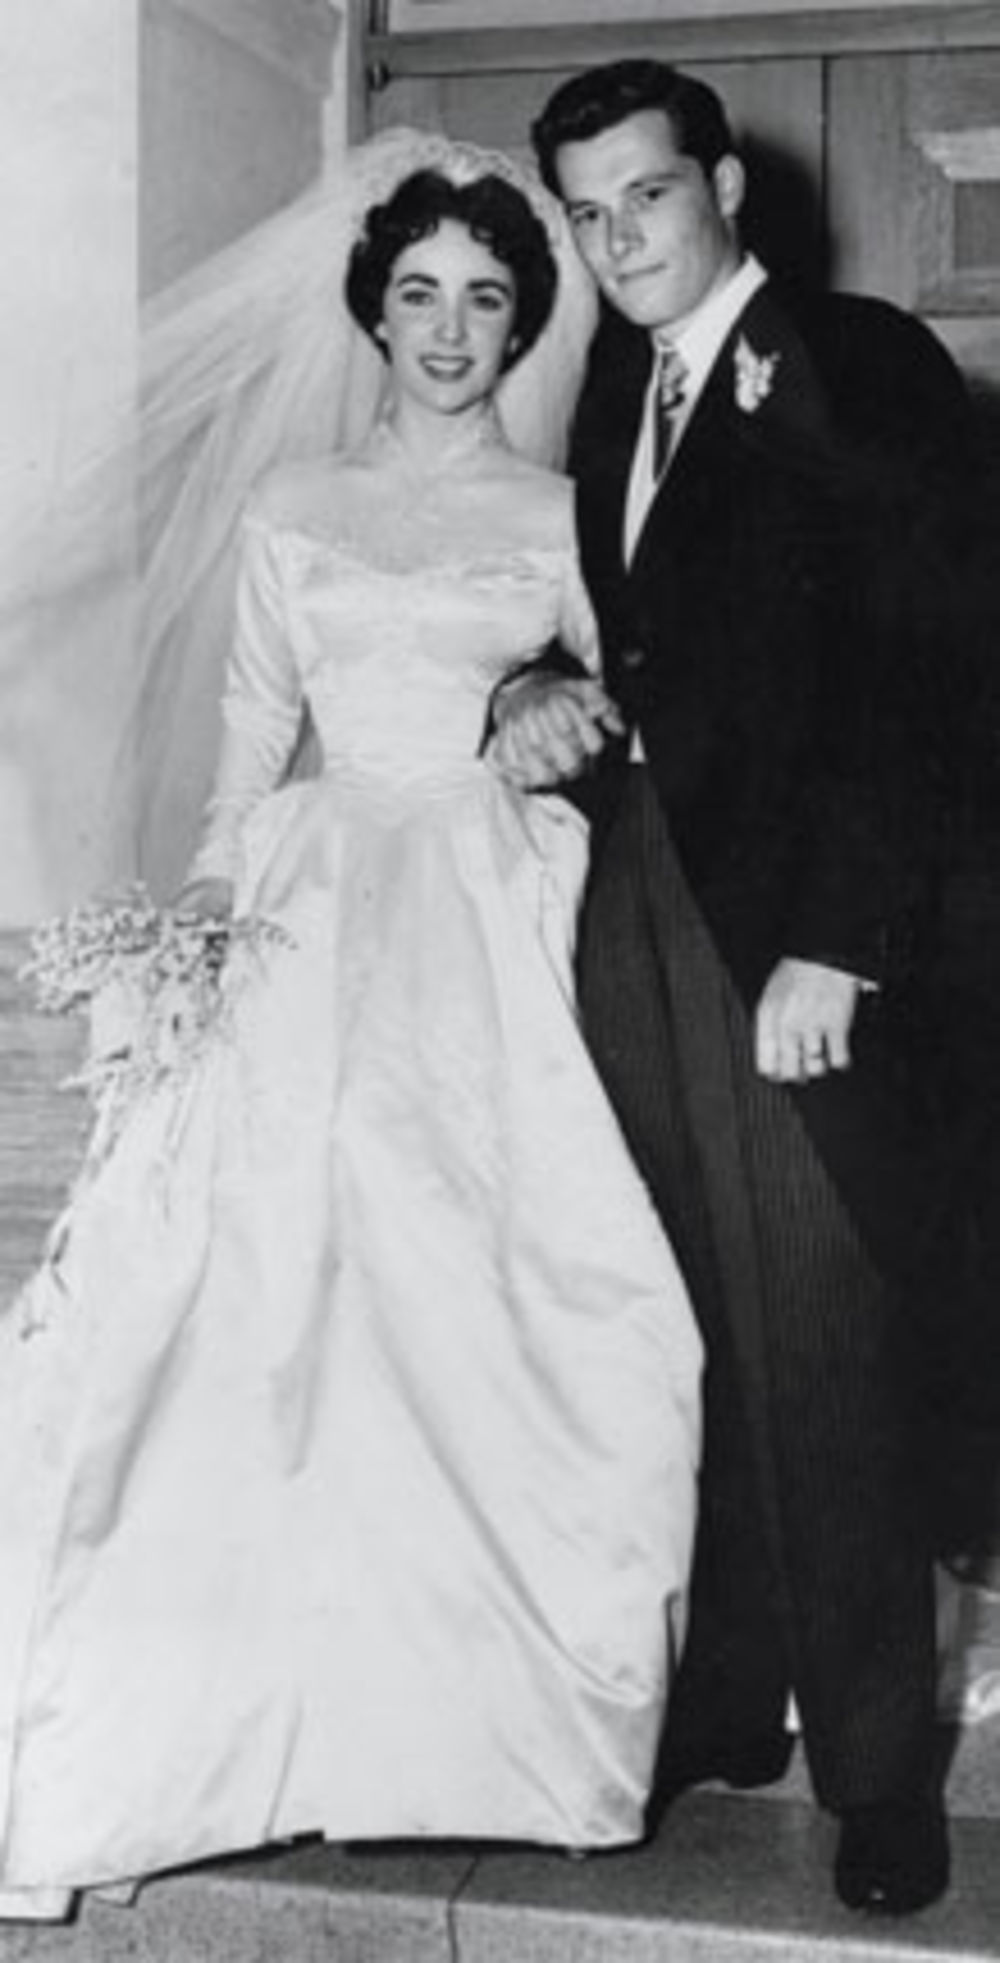 Na pragu devete decenije, posle nekoliko opakih bolesti koje je uspela da prevaziđe i osam brakova, legendarna Elizabet Tejlor preminula je 23. marta 2011. godine u 79. godini života... Pročitajte njenu životnu priču.